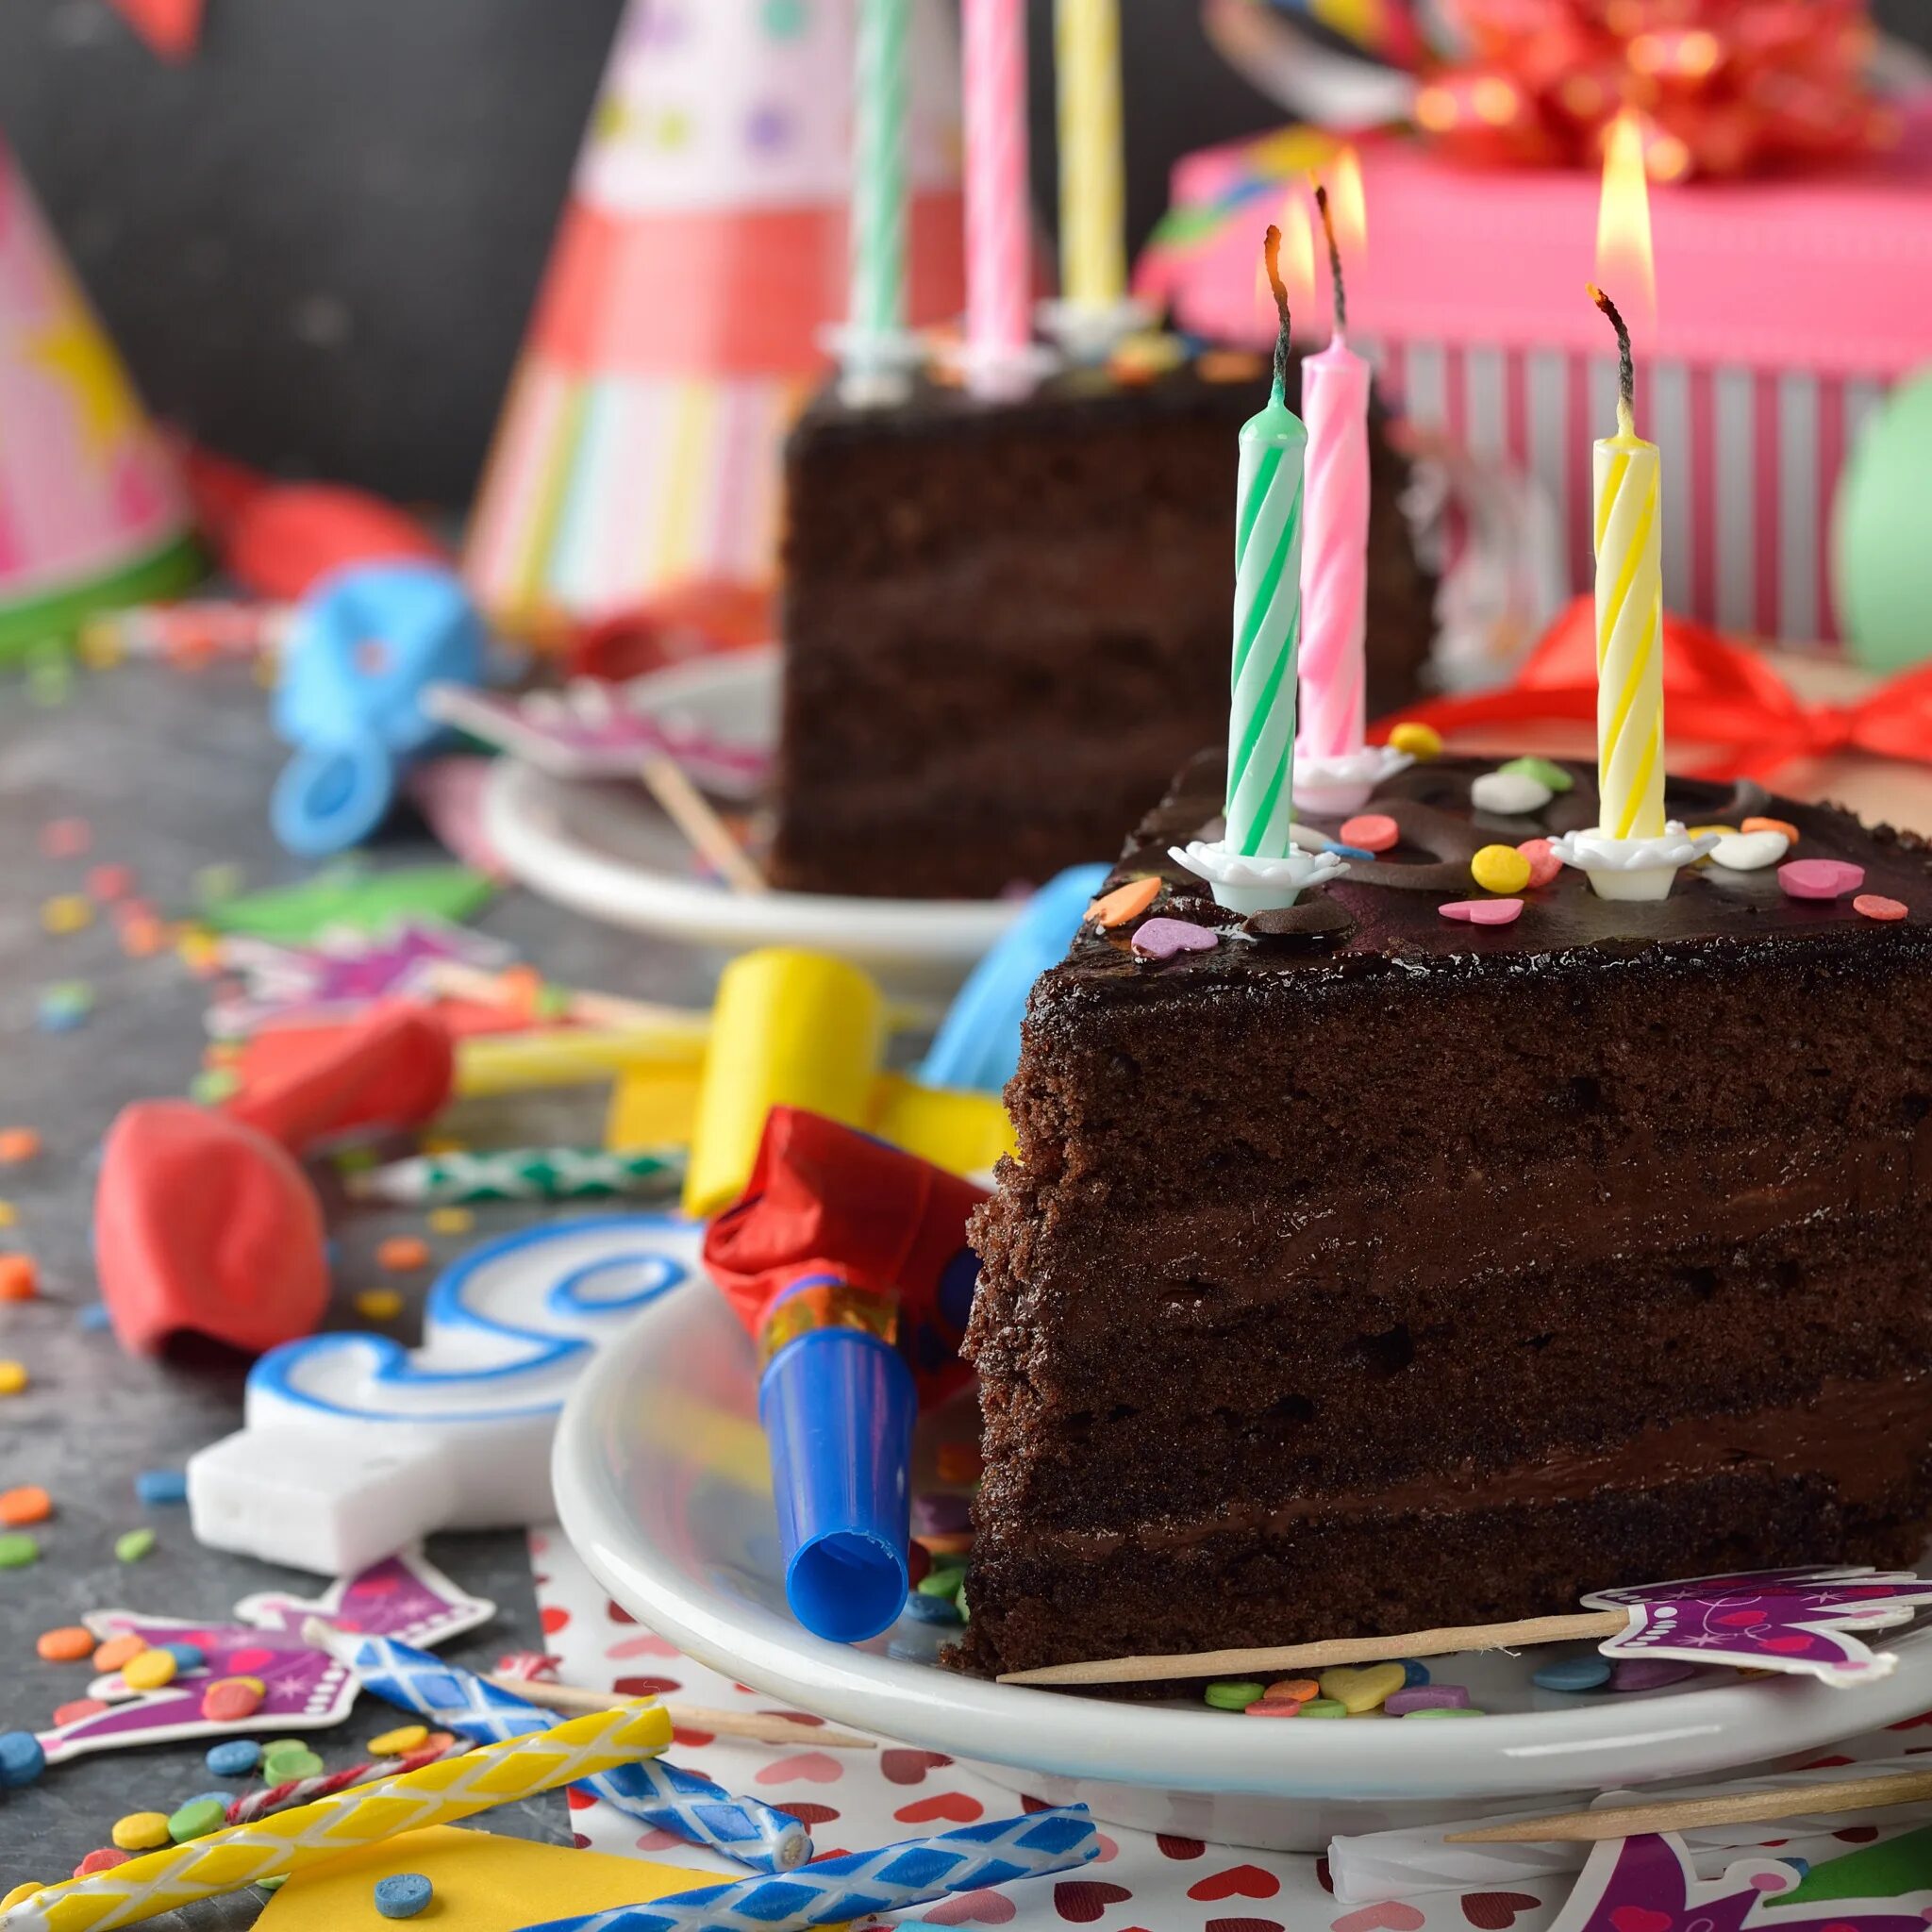 С днем рождения с тортом и шарами. Именинный торт. Торт с днем рождения!. С днеи м рождения с тортом. Свеча в торт "с днем рождения".